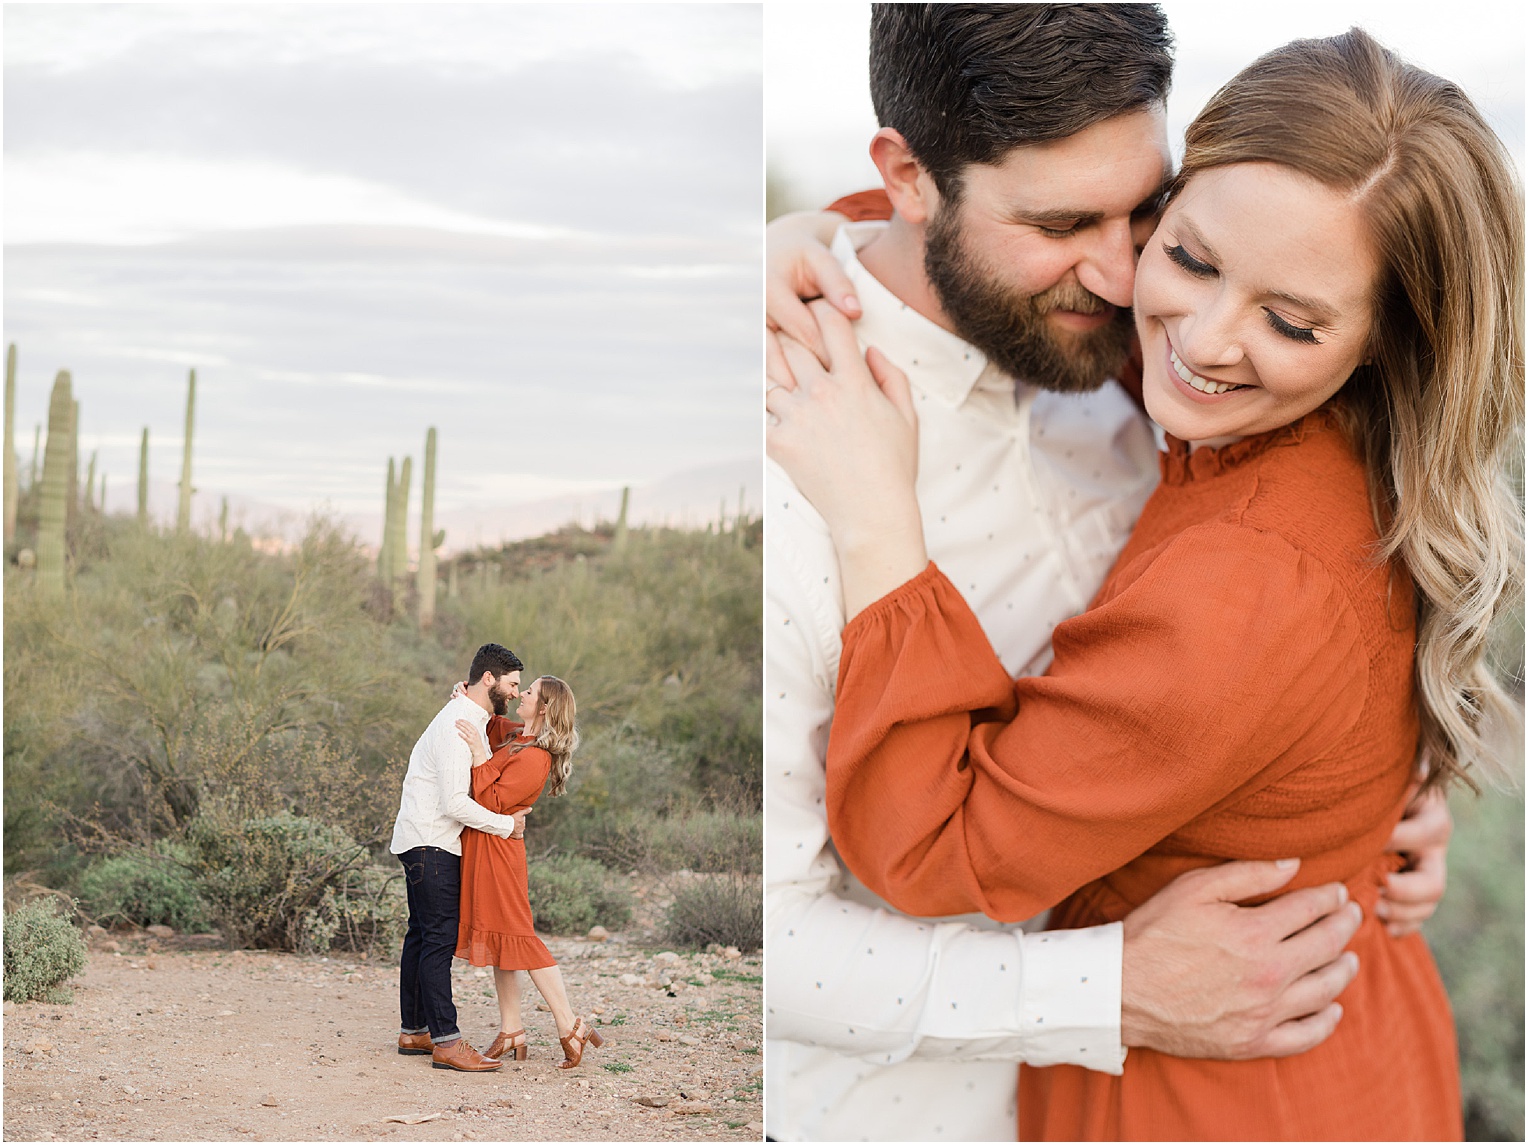 Engagement Photos in Tucson, Tucson AZ Katie + Michael Casual Desert Engagement Session